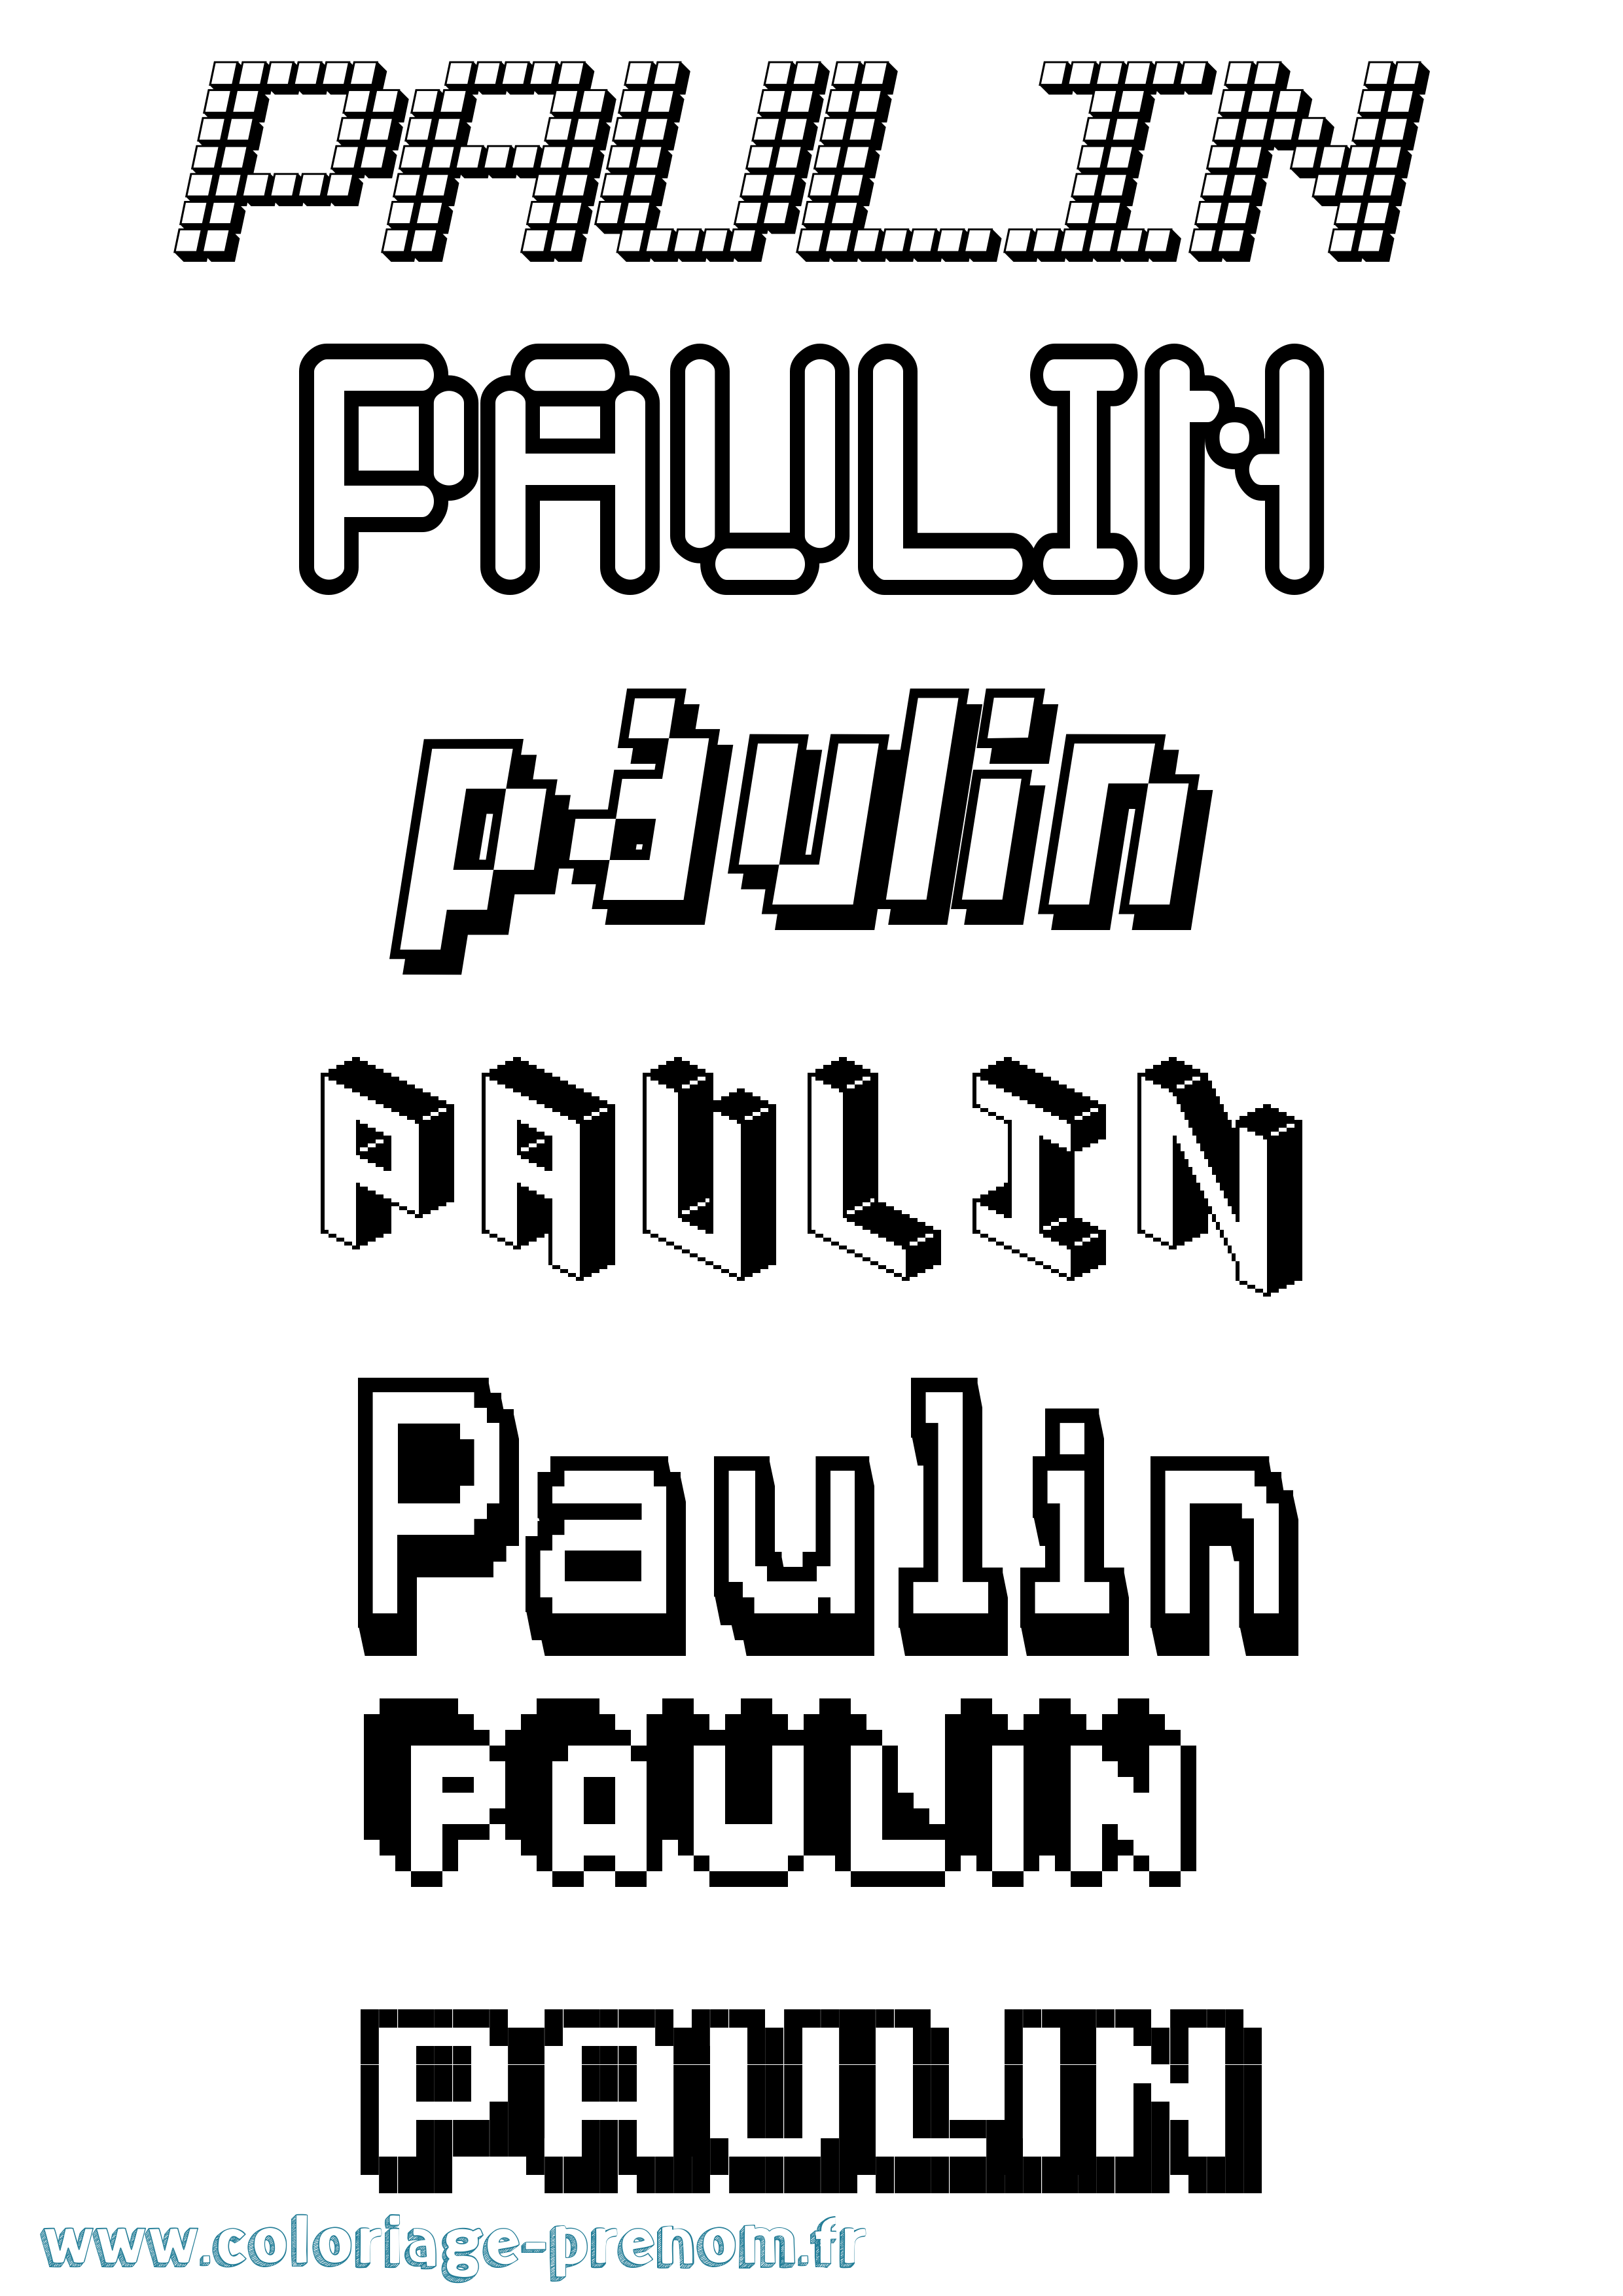 Coloriage prénom Paulin Pixel